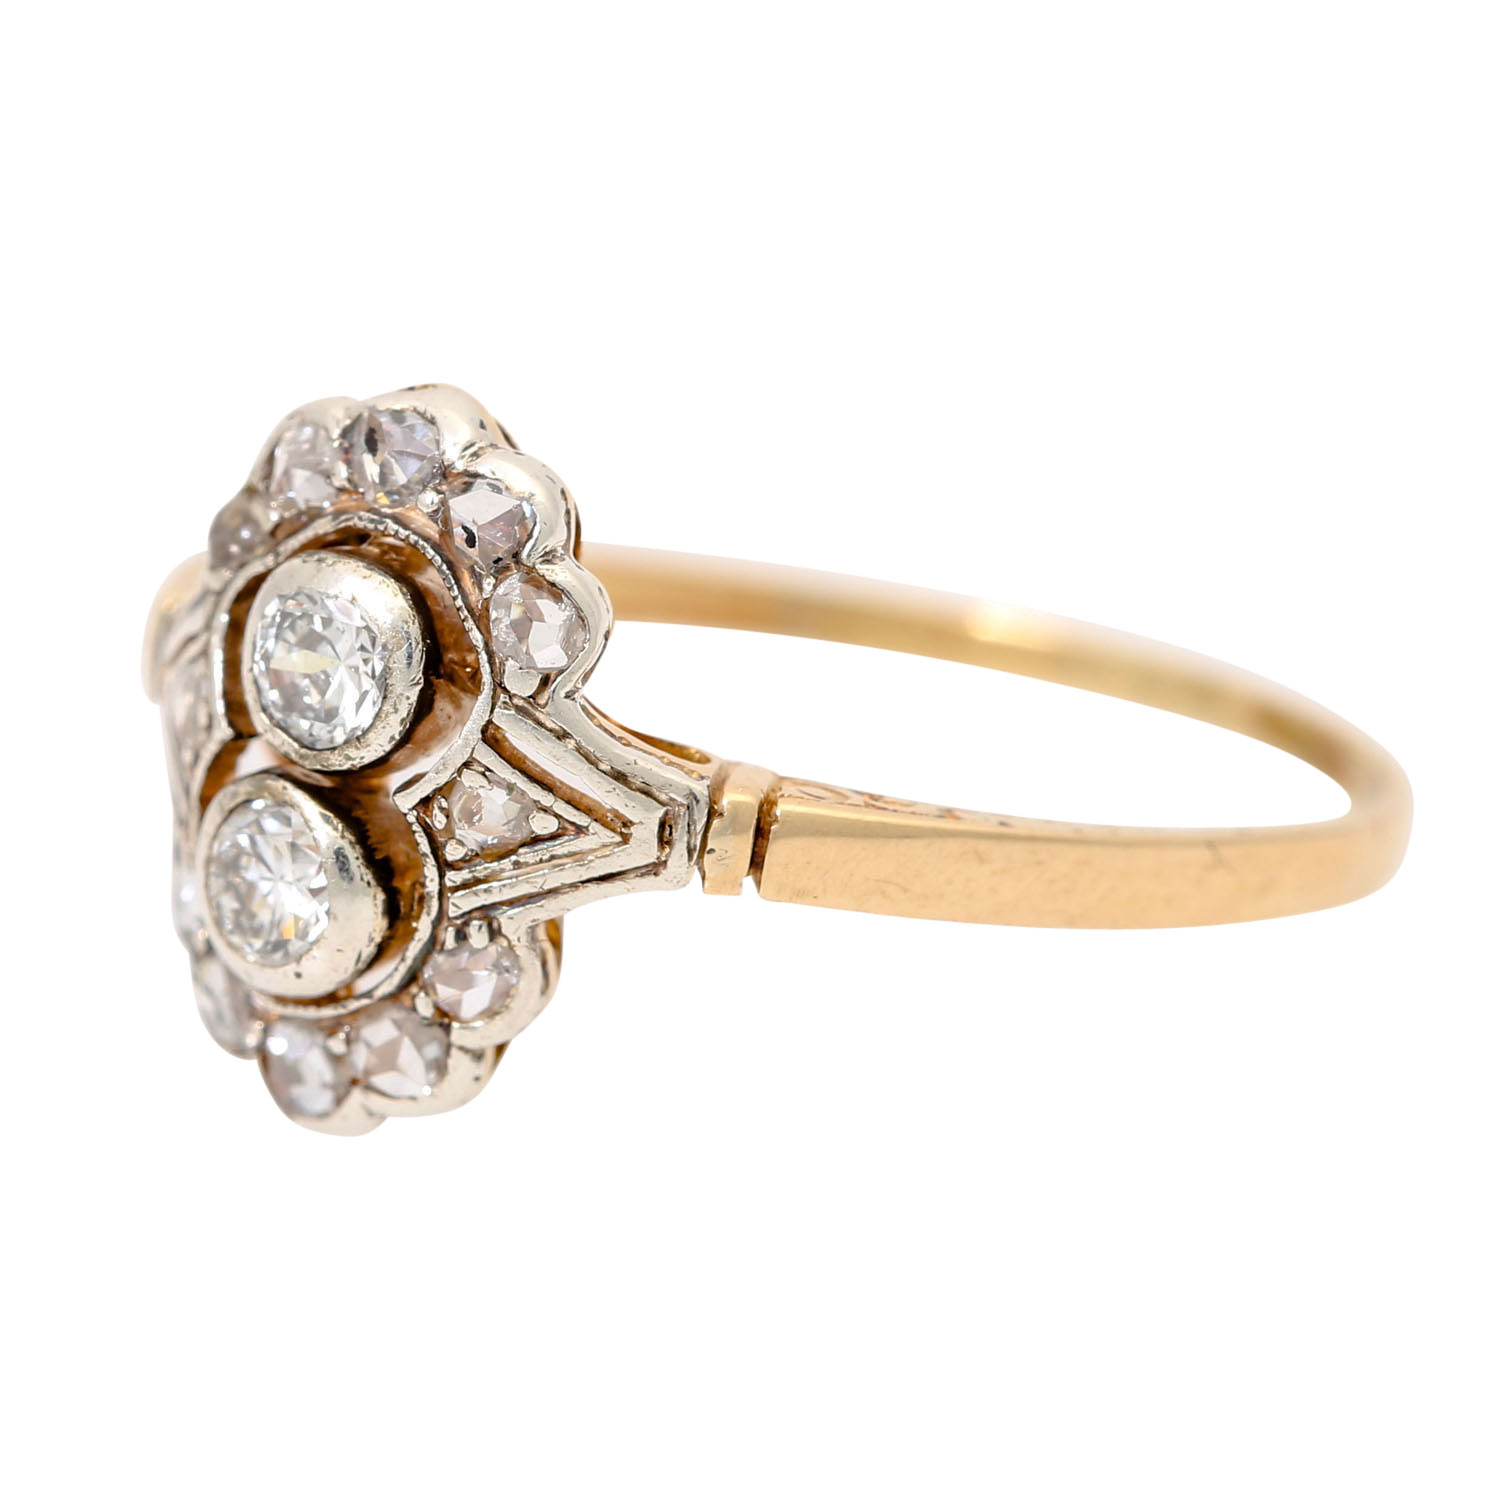 Zierlicher Jugendstil Ring mit Diamanten - Image 3 of 3